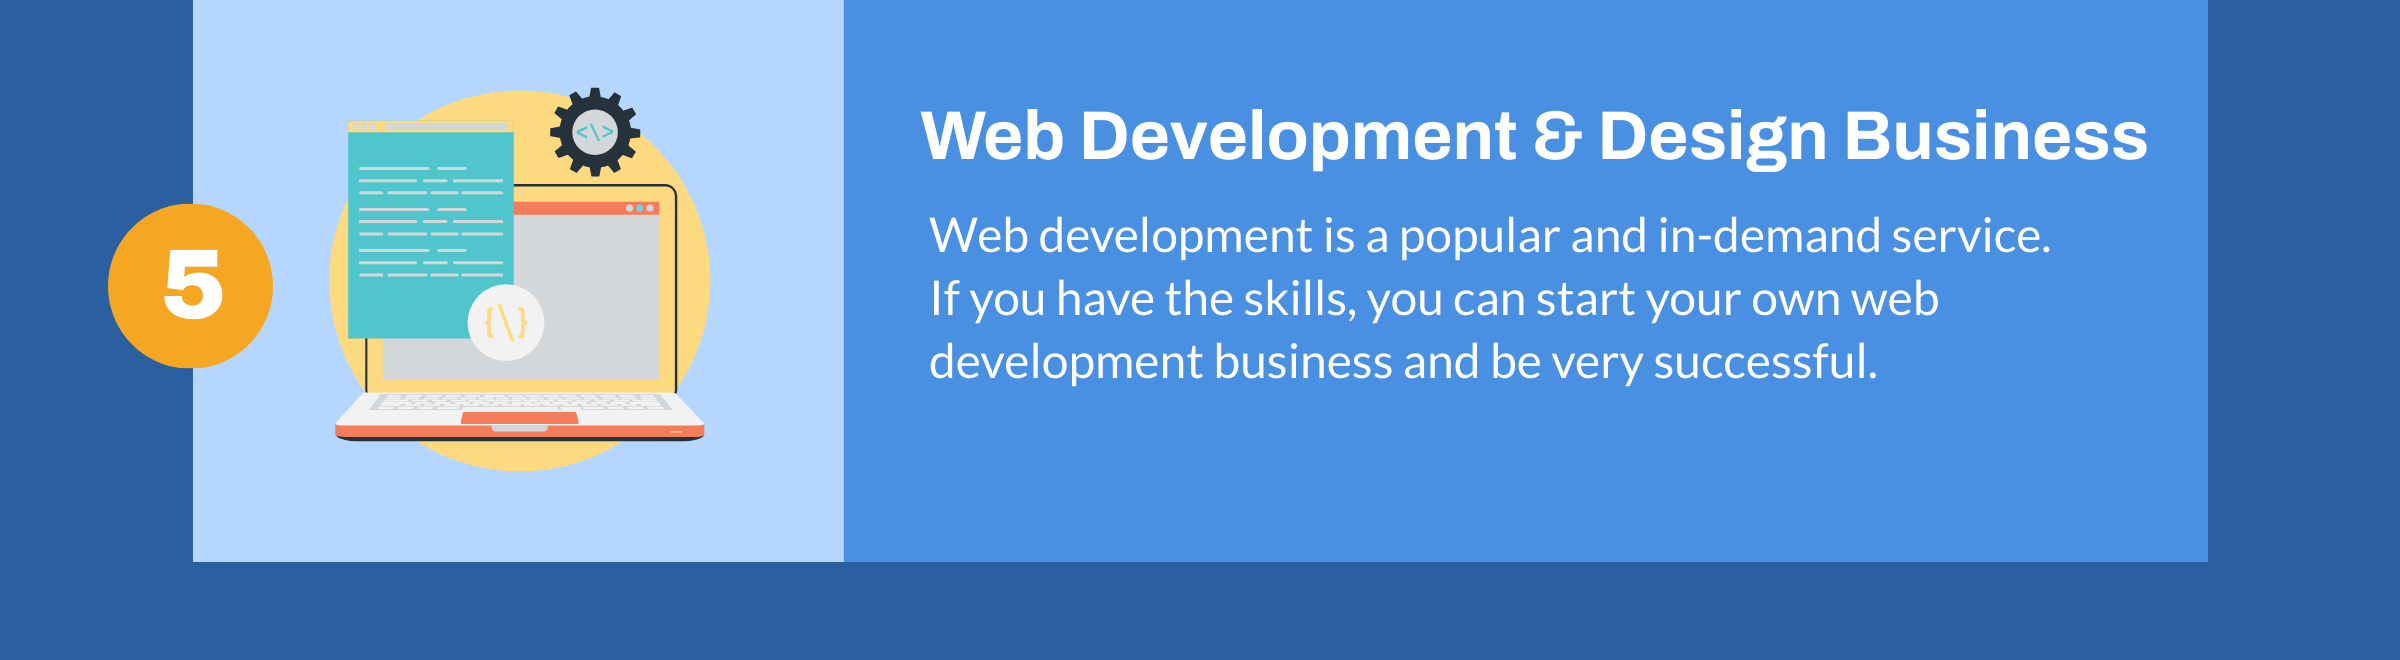 Negocio de desarrollo web y diseño web